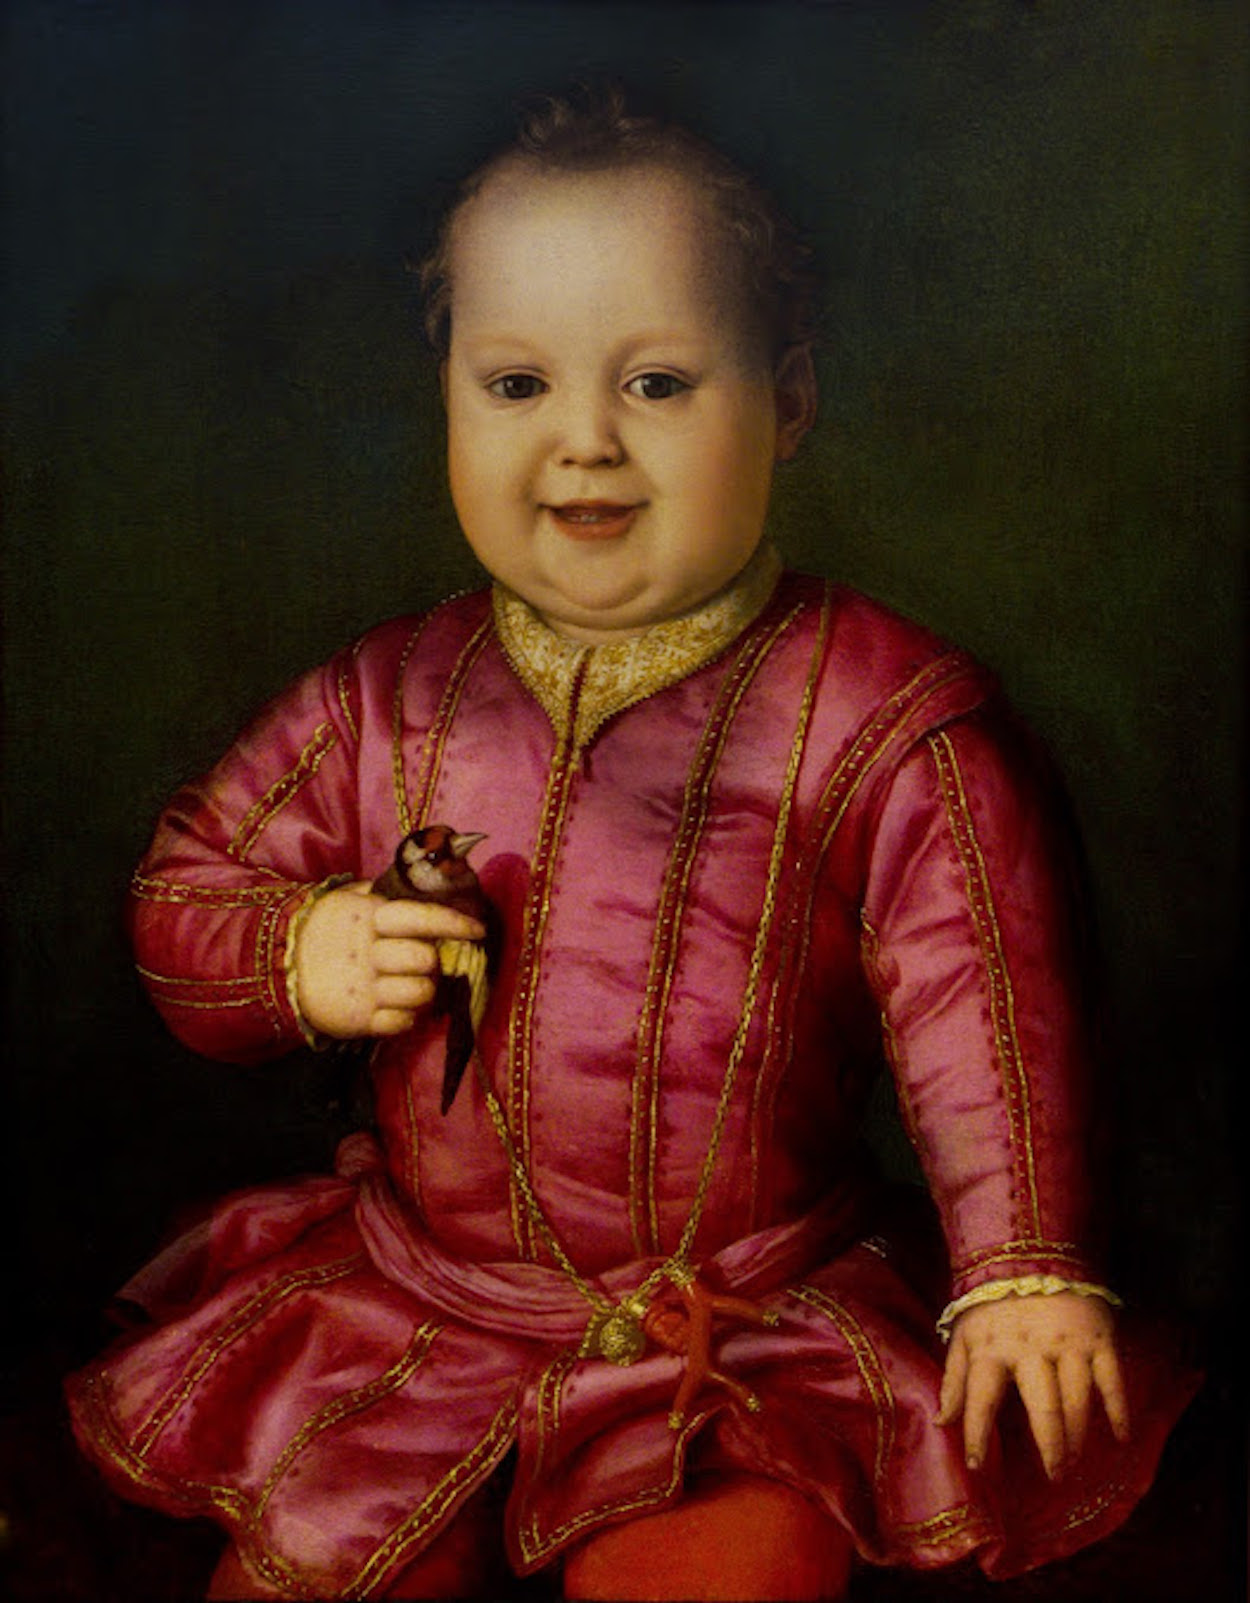 Giovanni de' Medici als een Kind by Agnolo Bronzino - circa 1545 - 58 cm × 48 cm 